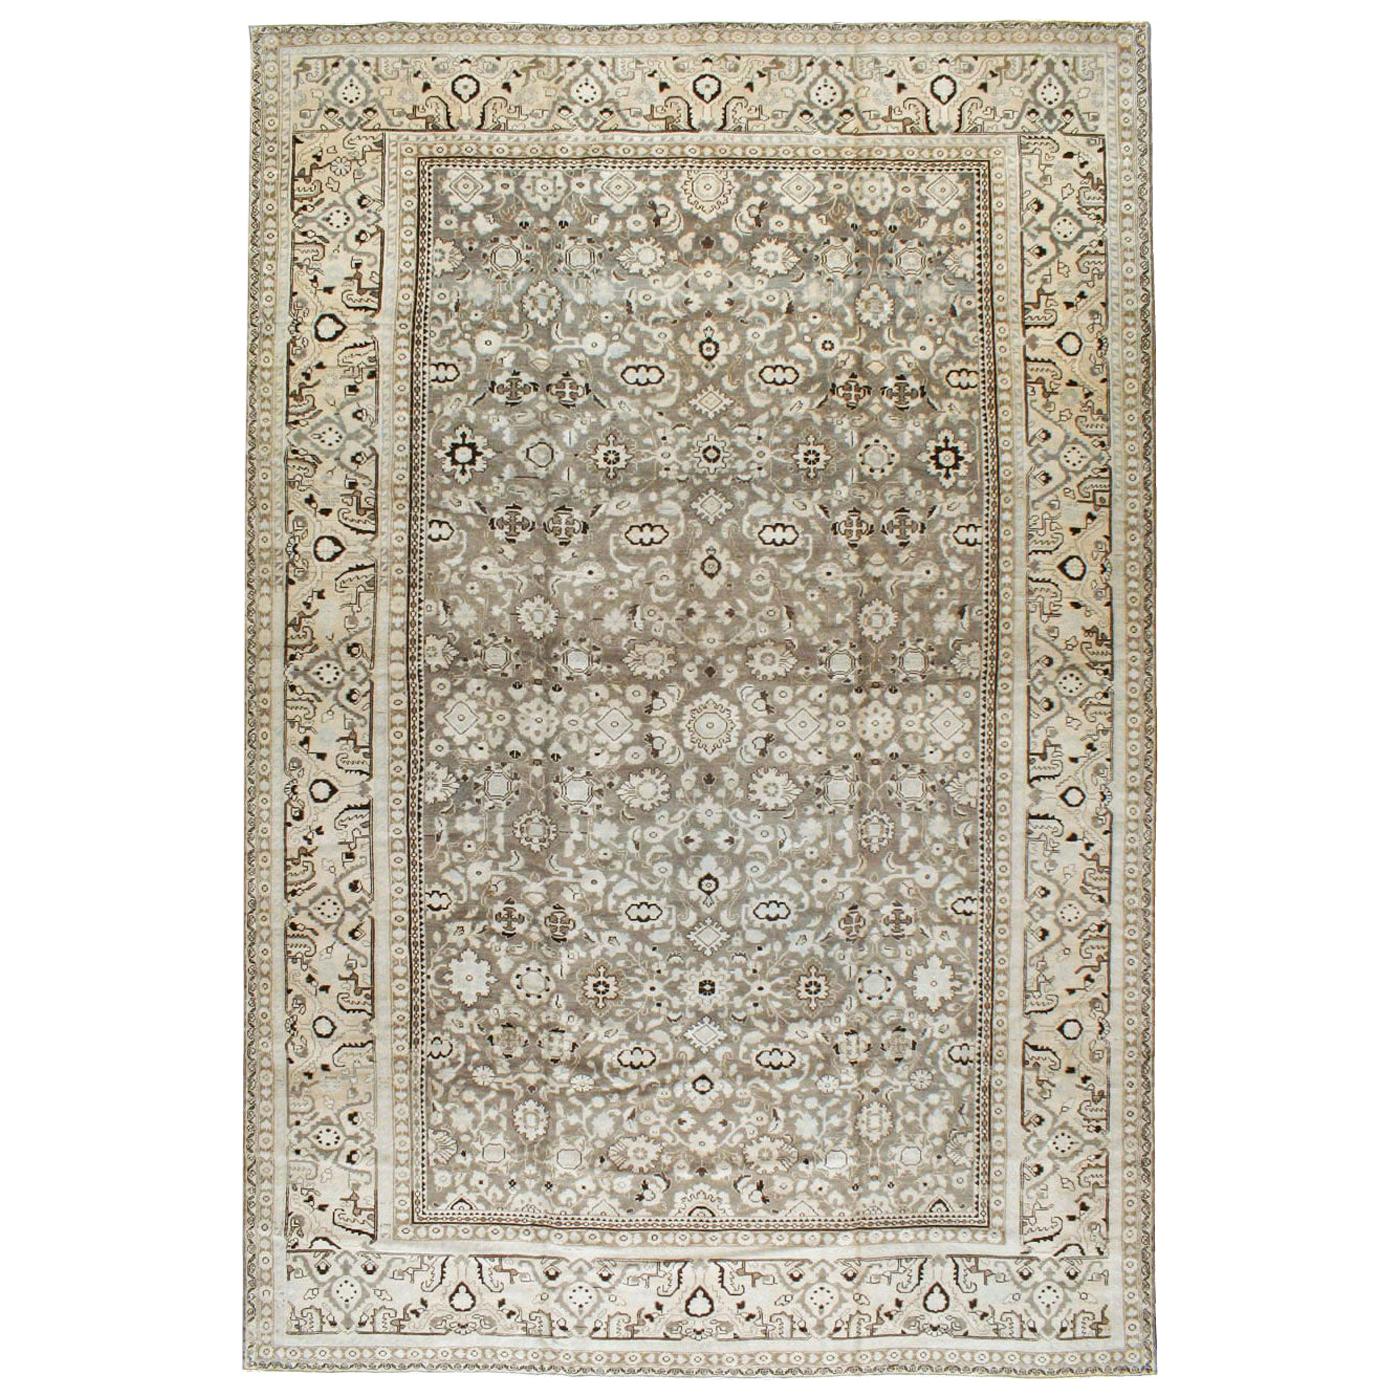 Handgefertigter persischer Malayer-Teppich in Zimmergröße in neutralem Farbton aus der Mitte des 20. Jahrhunderts